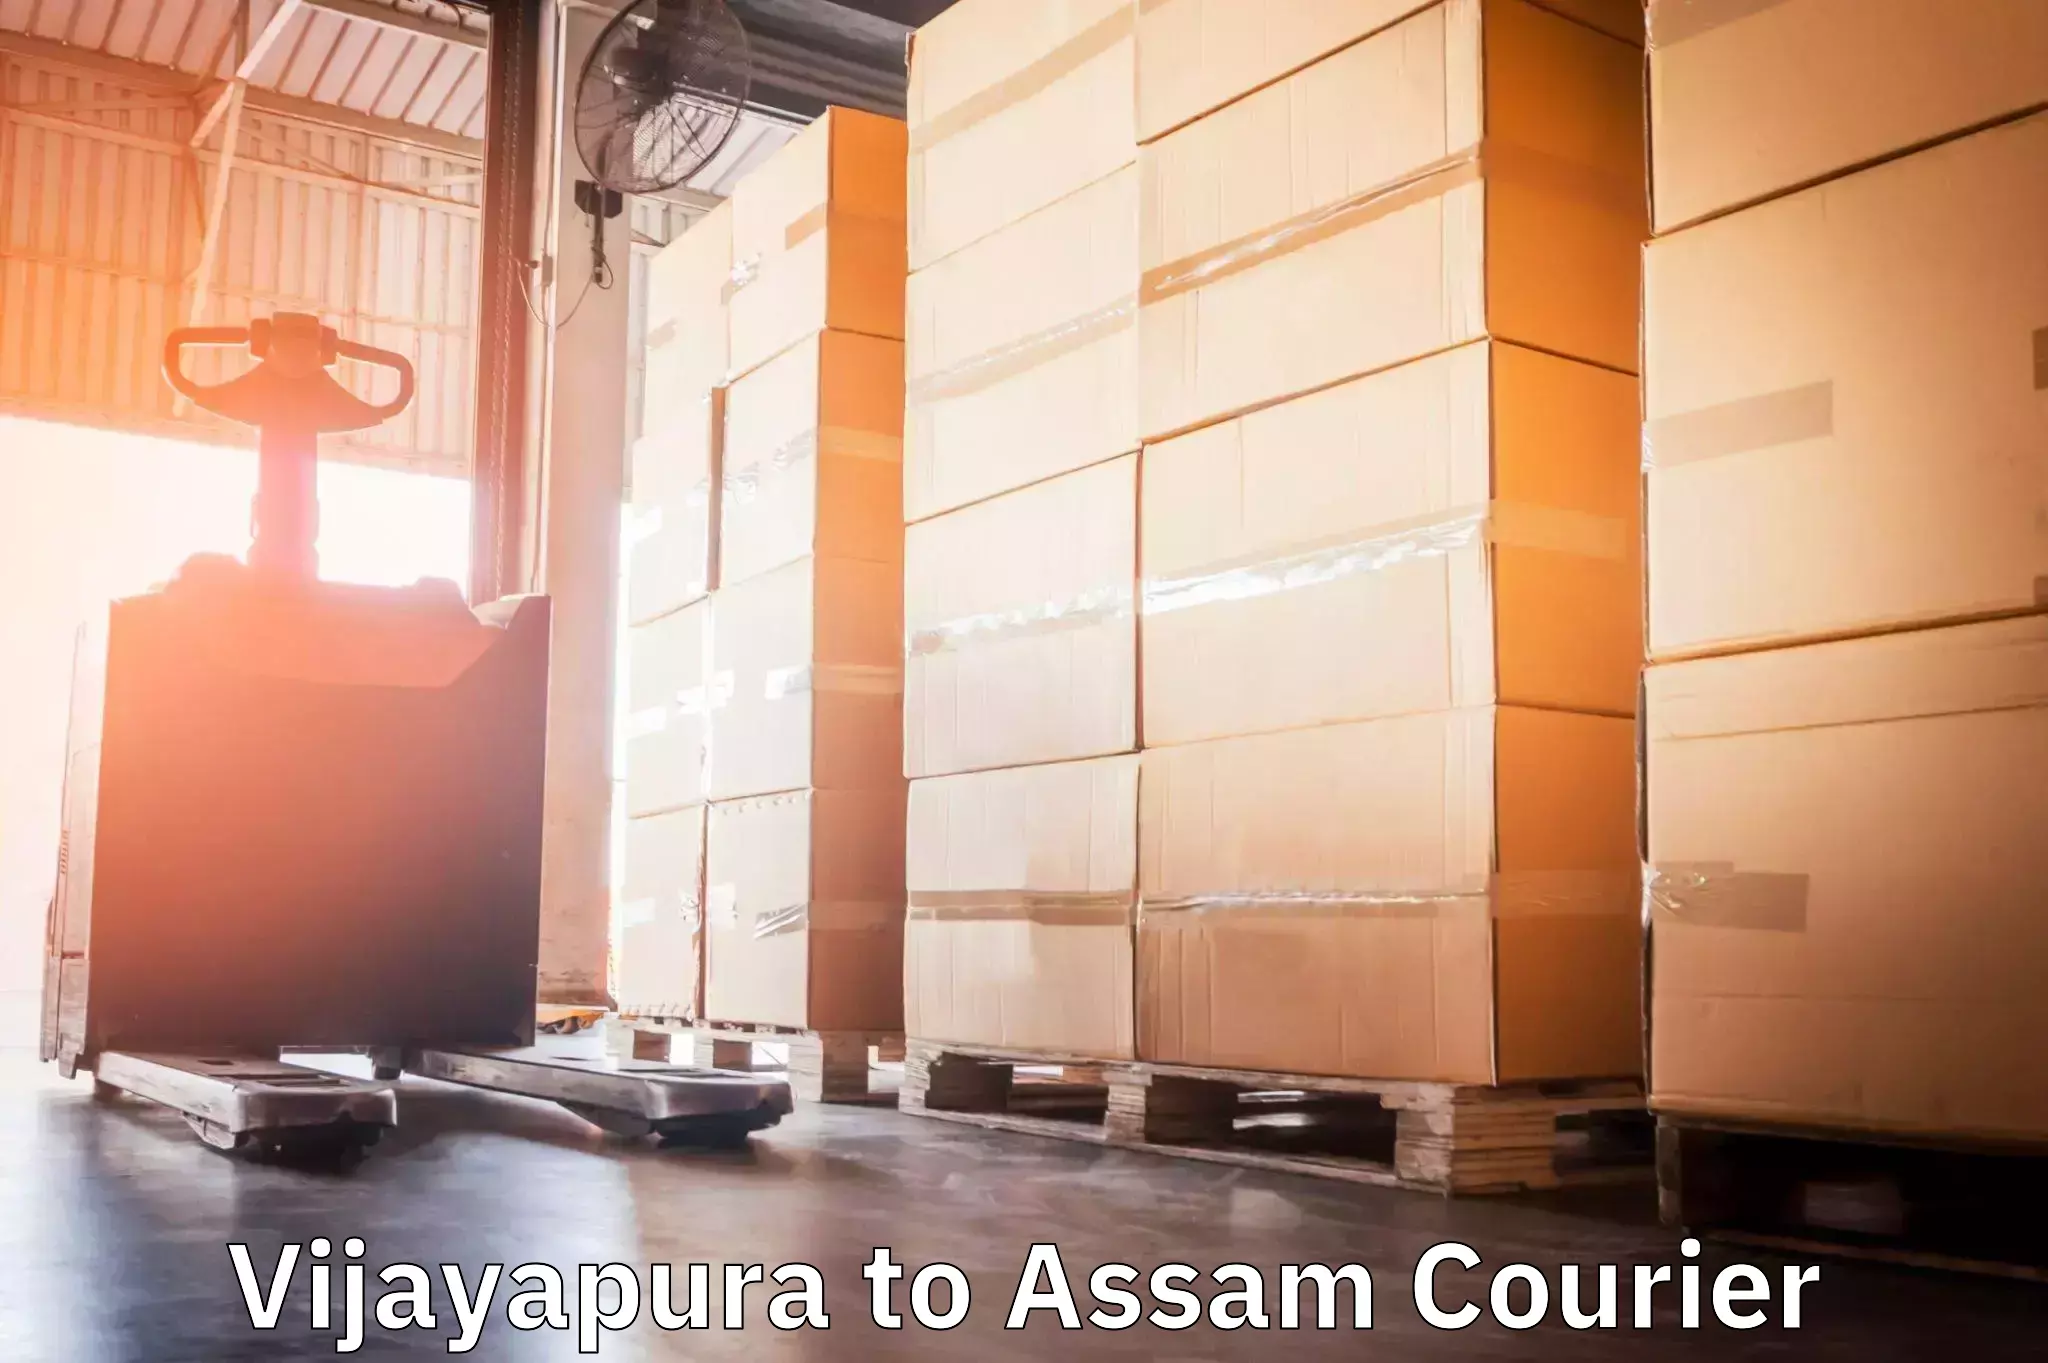 Personal courier services Vijayapura to Assam